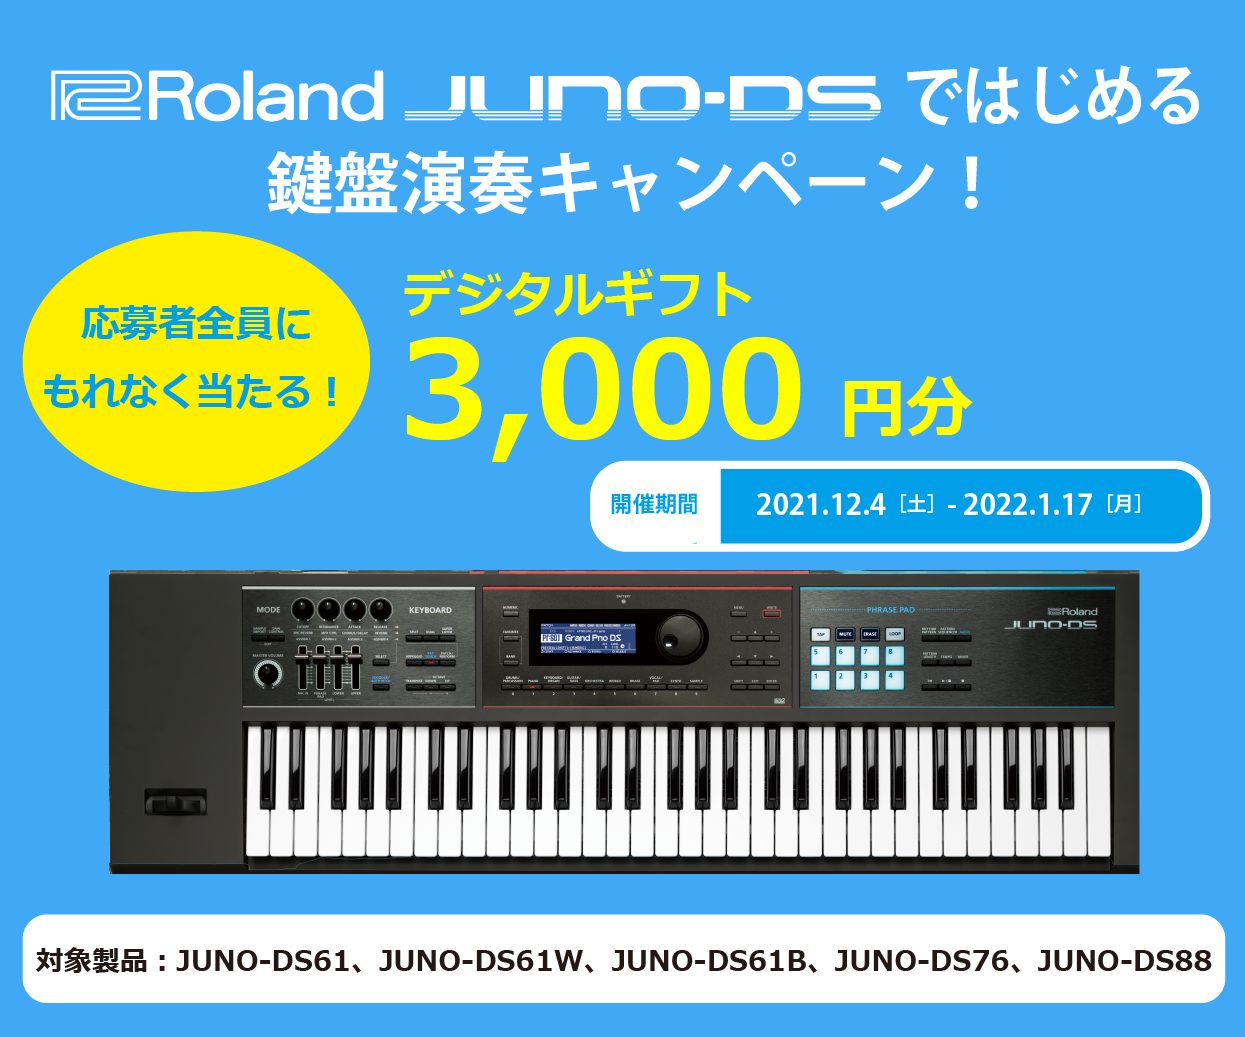 *デジタルギフト￥3000がもらえる、JUNO-DSではじめる鍵盤演奏キャンペーン！ Roland JUNO-DSシリーズ購入・応募で、交換先を選べるデジタルギフト、デジコ3,000円分（一律）がもらえる「JUNO-DSではじめる鍵盤演奏キャンペーン」を実施します。 **キャンペーン概要 期間中に対 […]